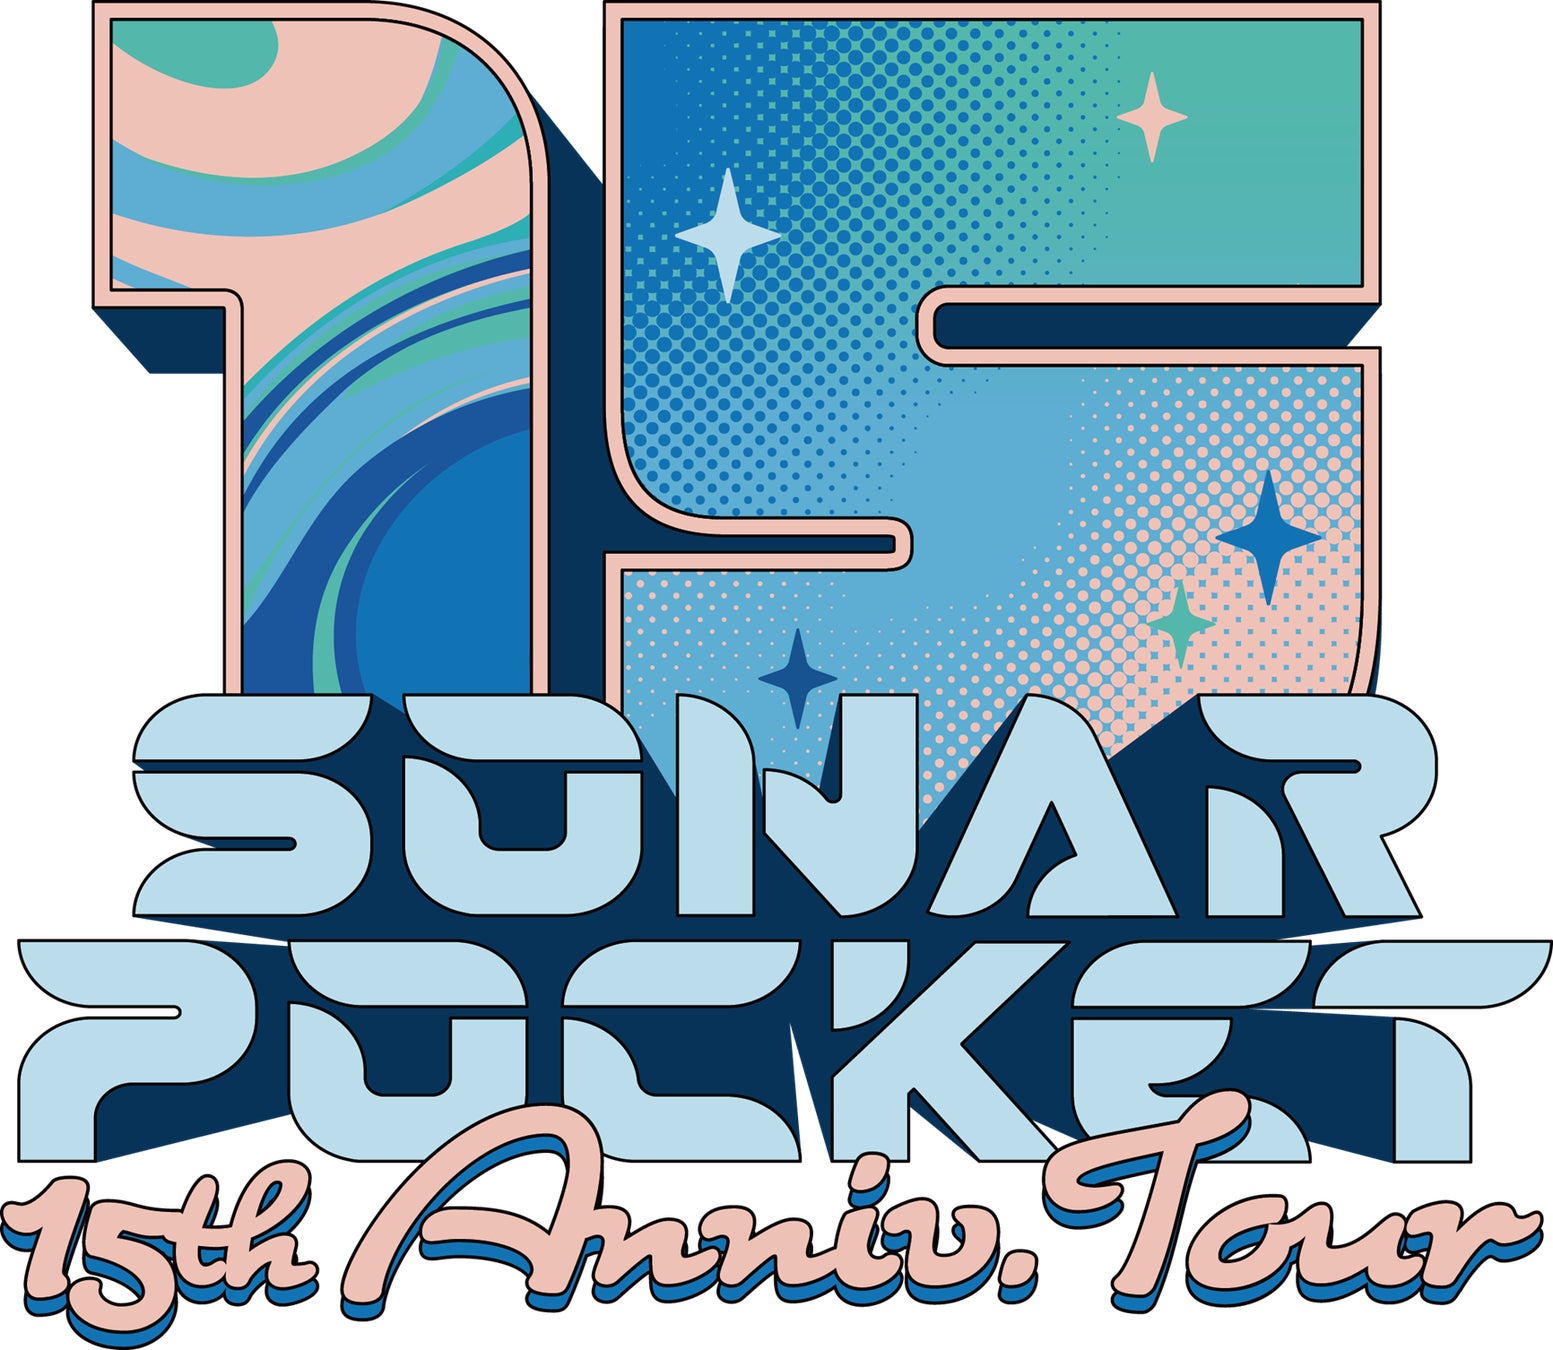 笑顔道整骨院グループ、ソナーポケットの全国ツアー「Sonar Pocket 15th Anniversary Tour  ～僕らの軌跡～」にてコンディショニングサポートを実施 | エンタメラッシュ